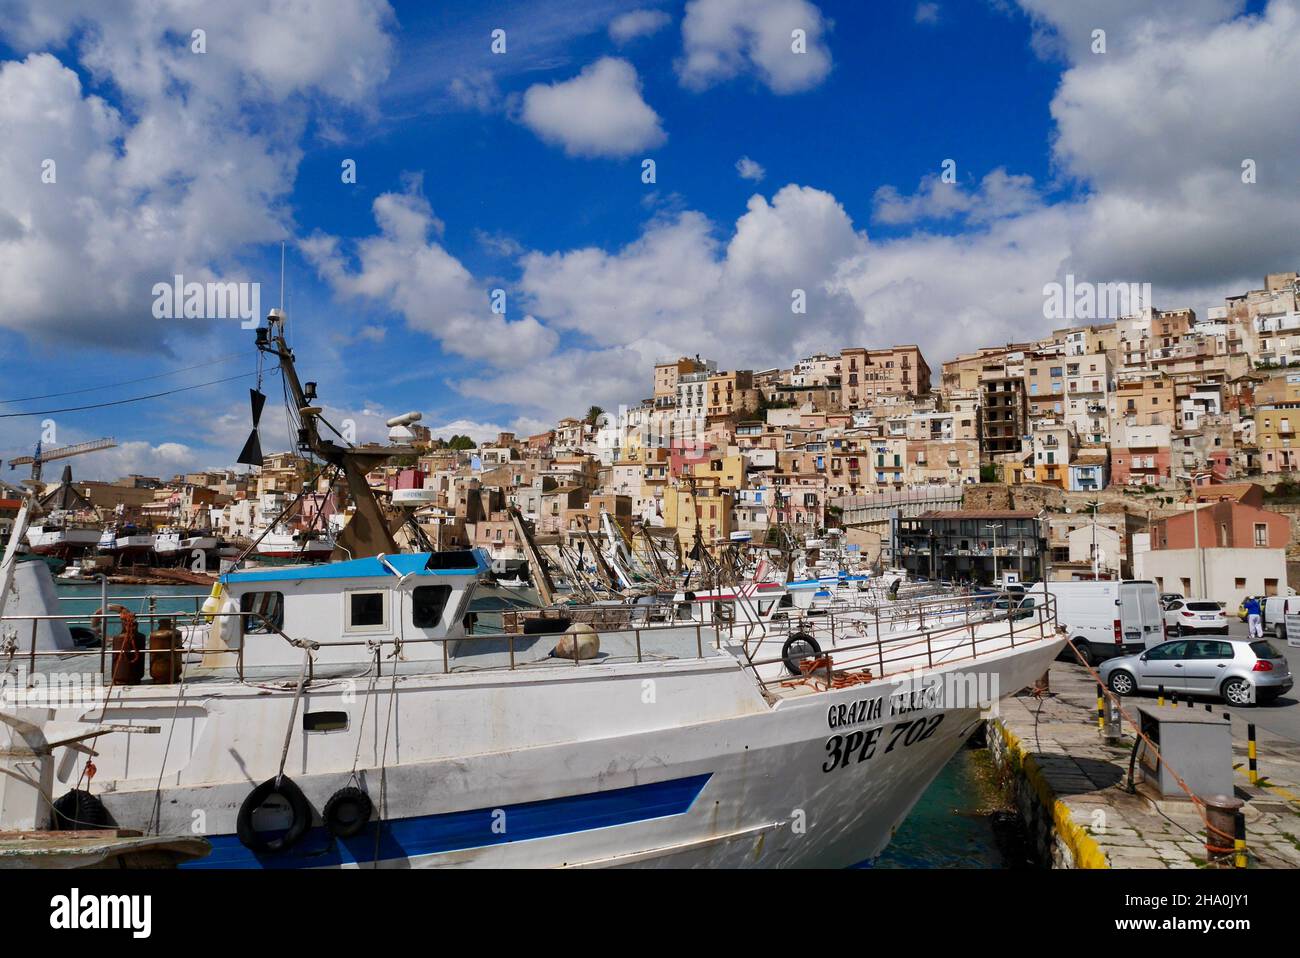 Sciacca, Sicilia, Italia, 24.03.2018. Barche da pesca nel porto con case colorate della città vecchia sullo sfondo. Foto Stock